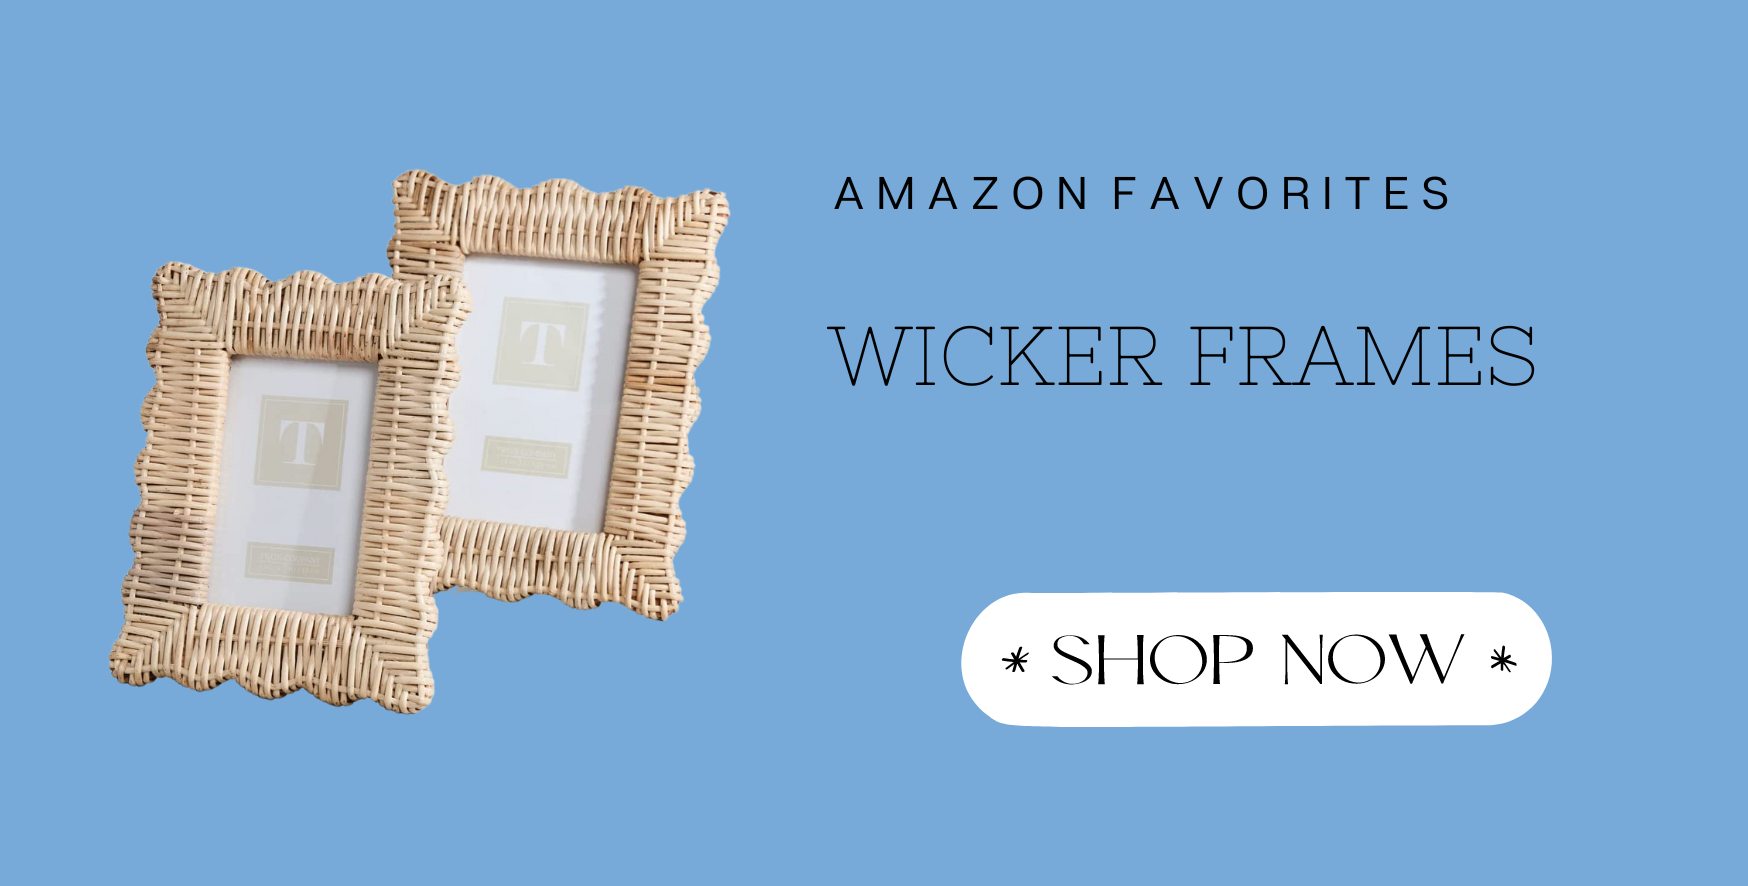 THIS WEEK'S AMAZON FAVORITES. Amazon wicker frame set.